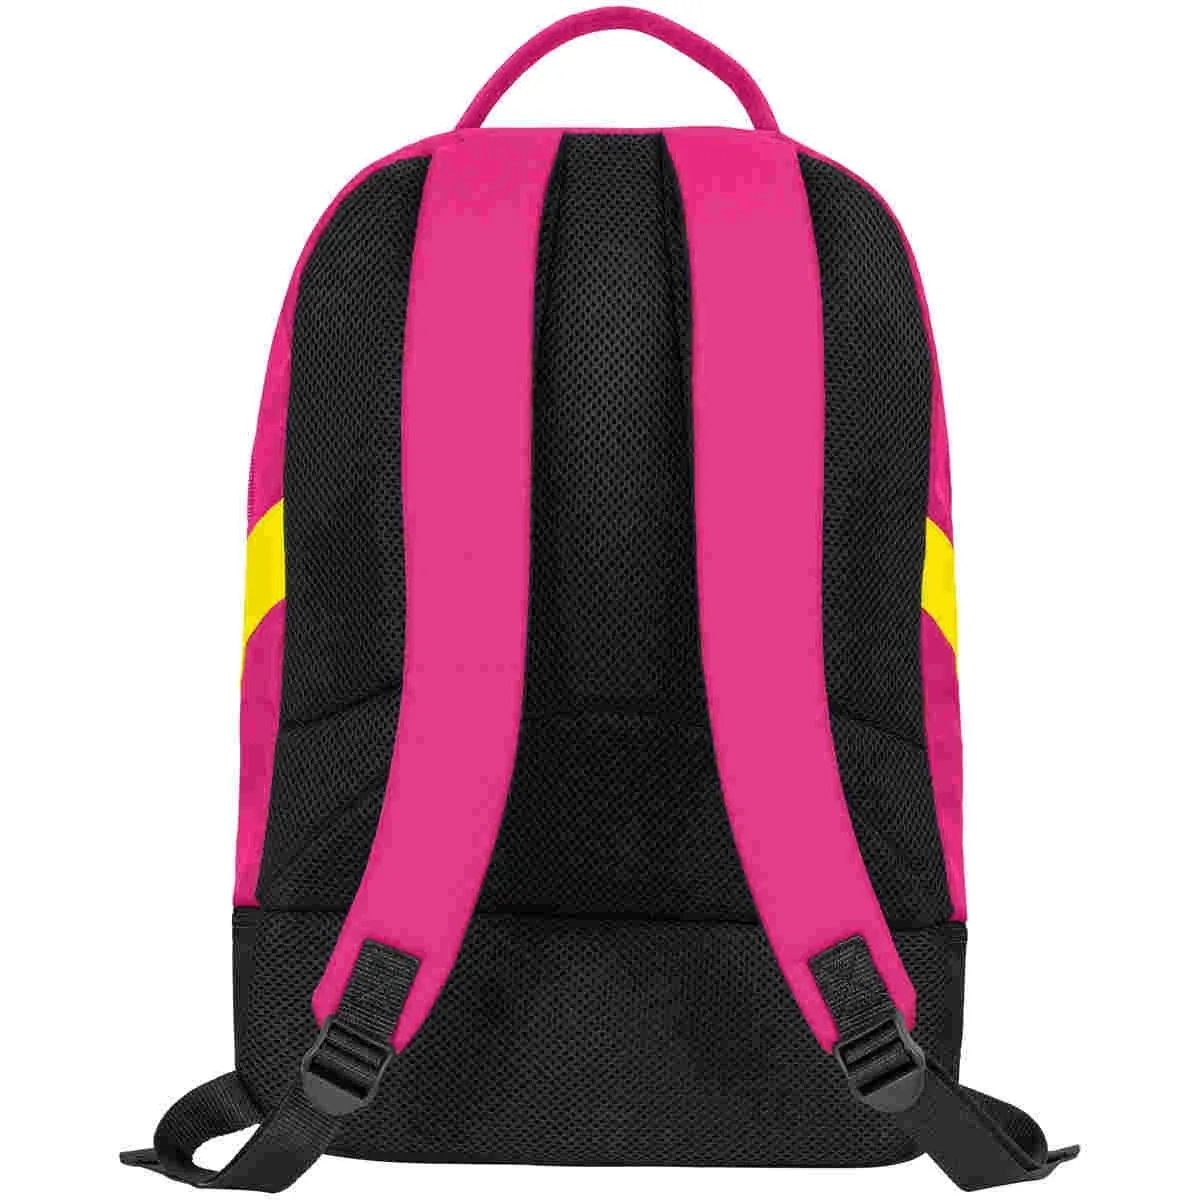 Jako backpack Iconic pink/black/neon yellow